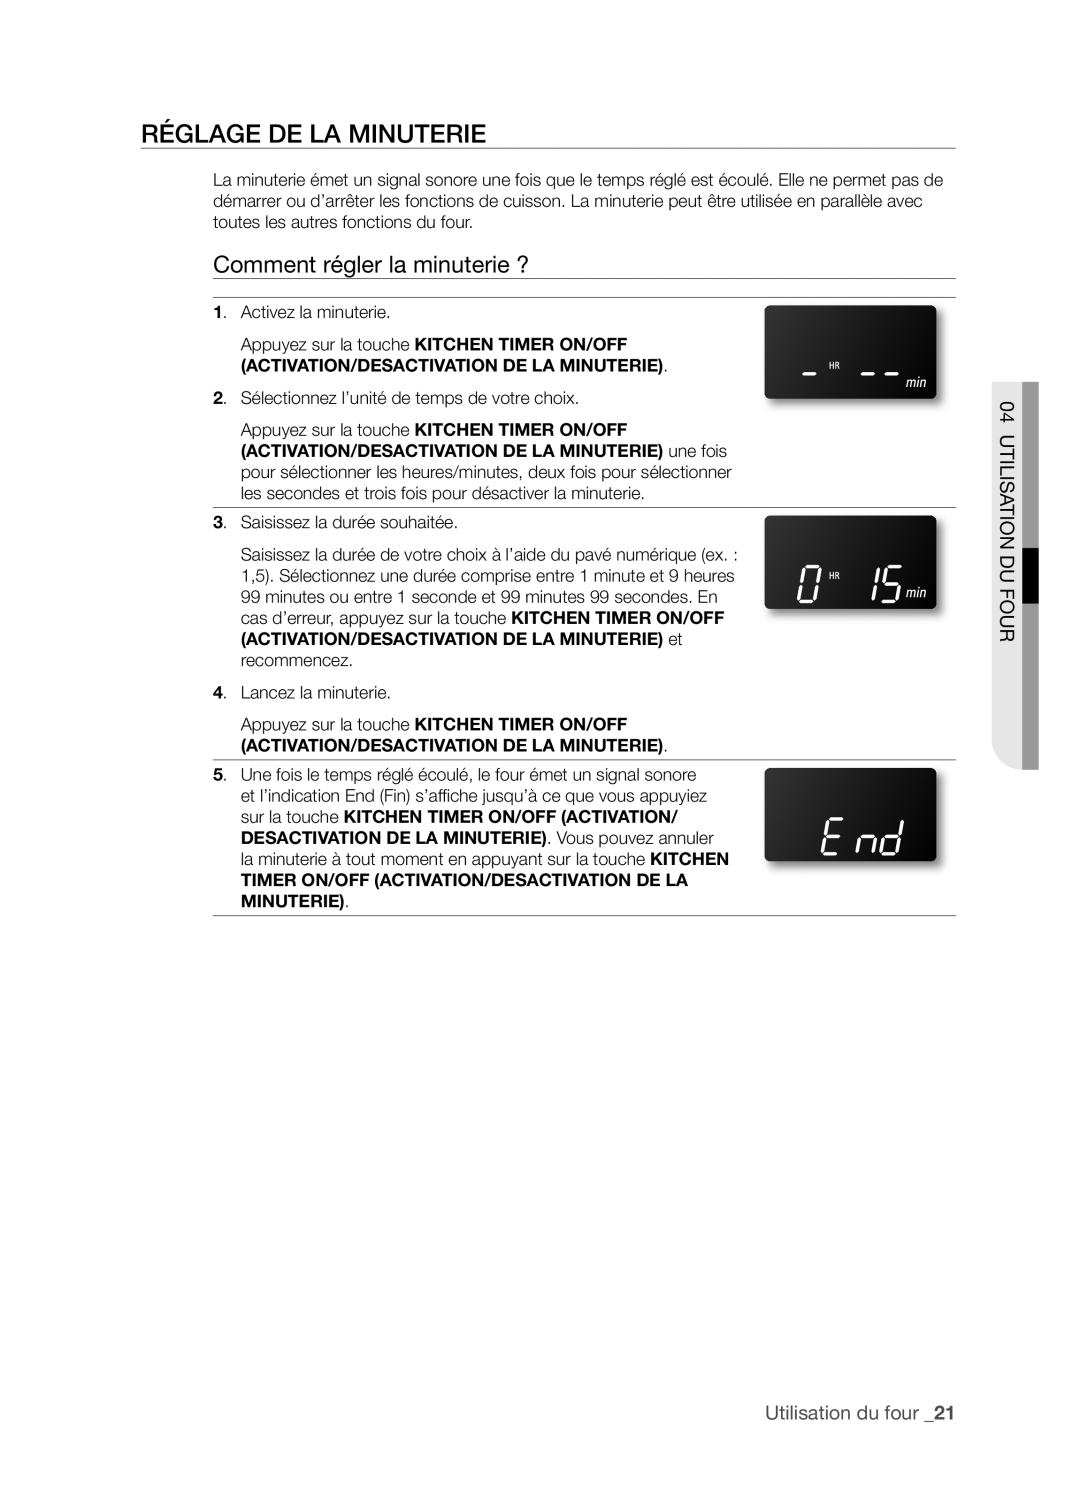 Samsung FTQ352IWX RéGLAGE DE LA MINUTERIE, Comment régler la minuterie ?, Utilisation Du Four, Utilisation du four _21 